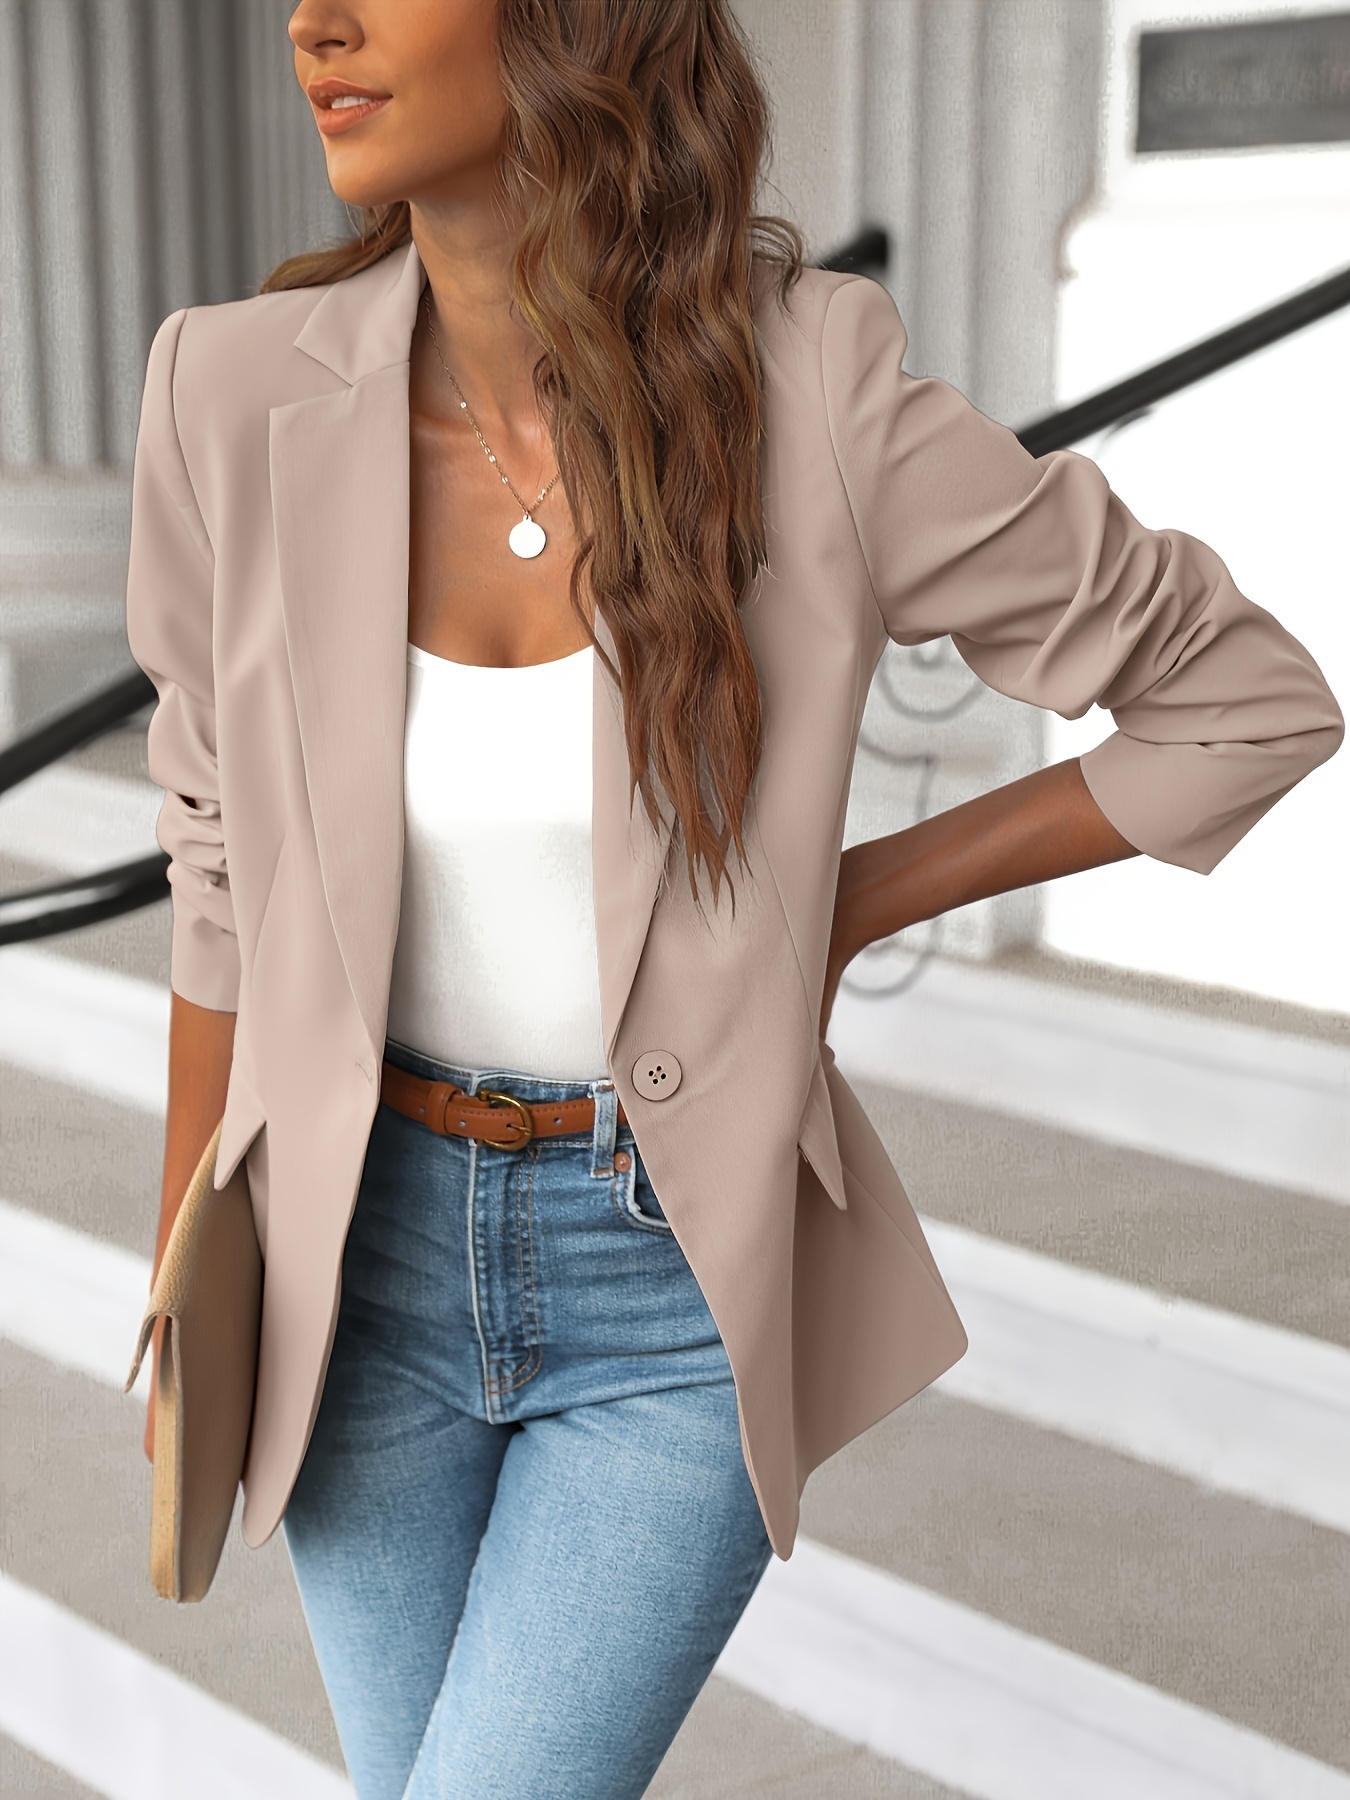 Women's Lapel Pockets Blazer Suit Long Sleeve Work Office Jacket